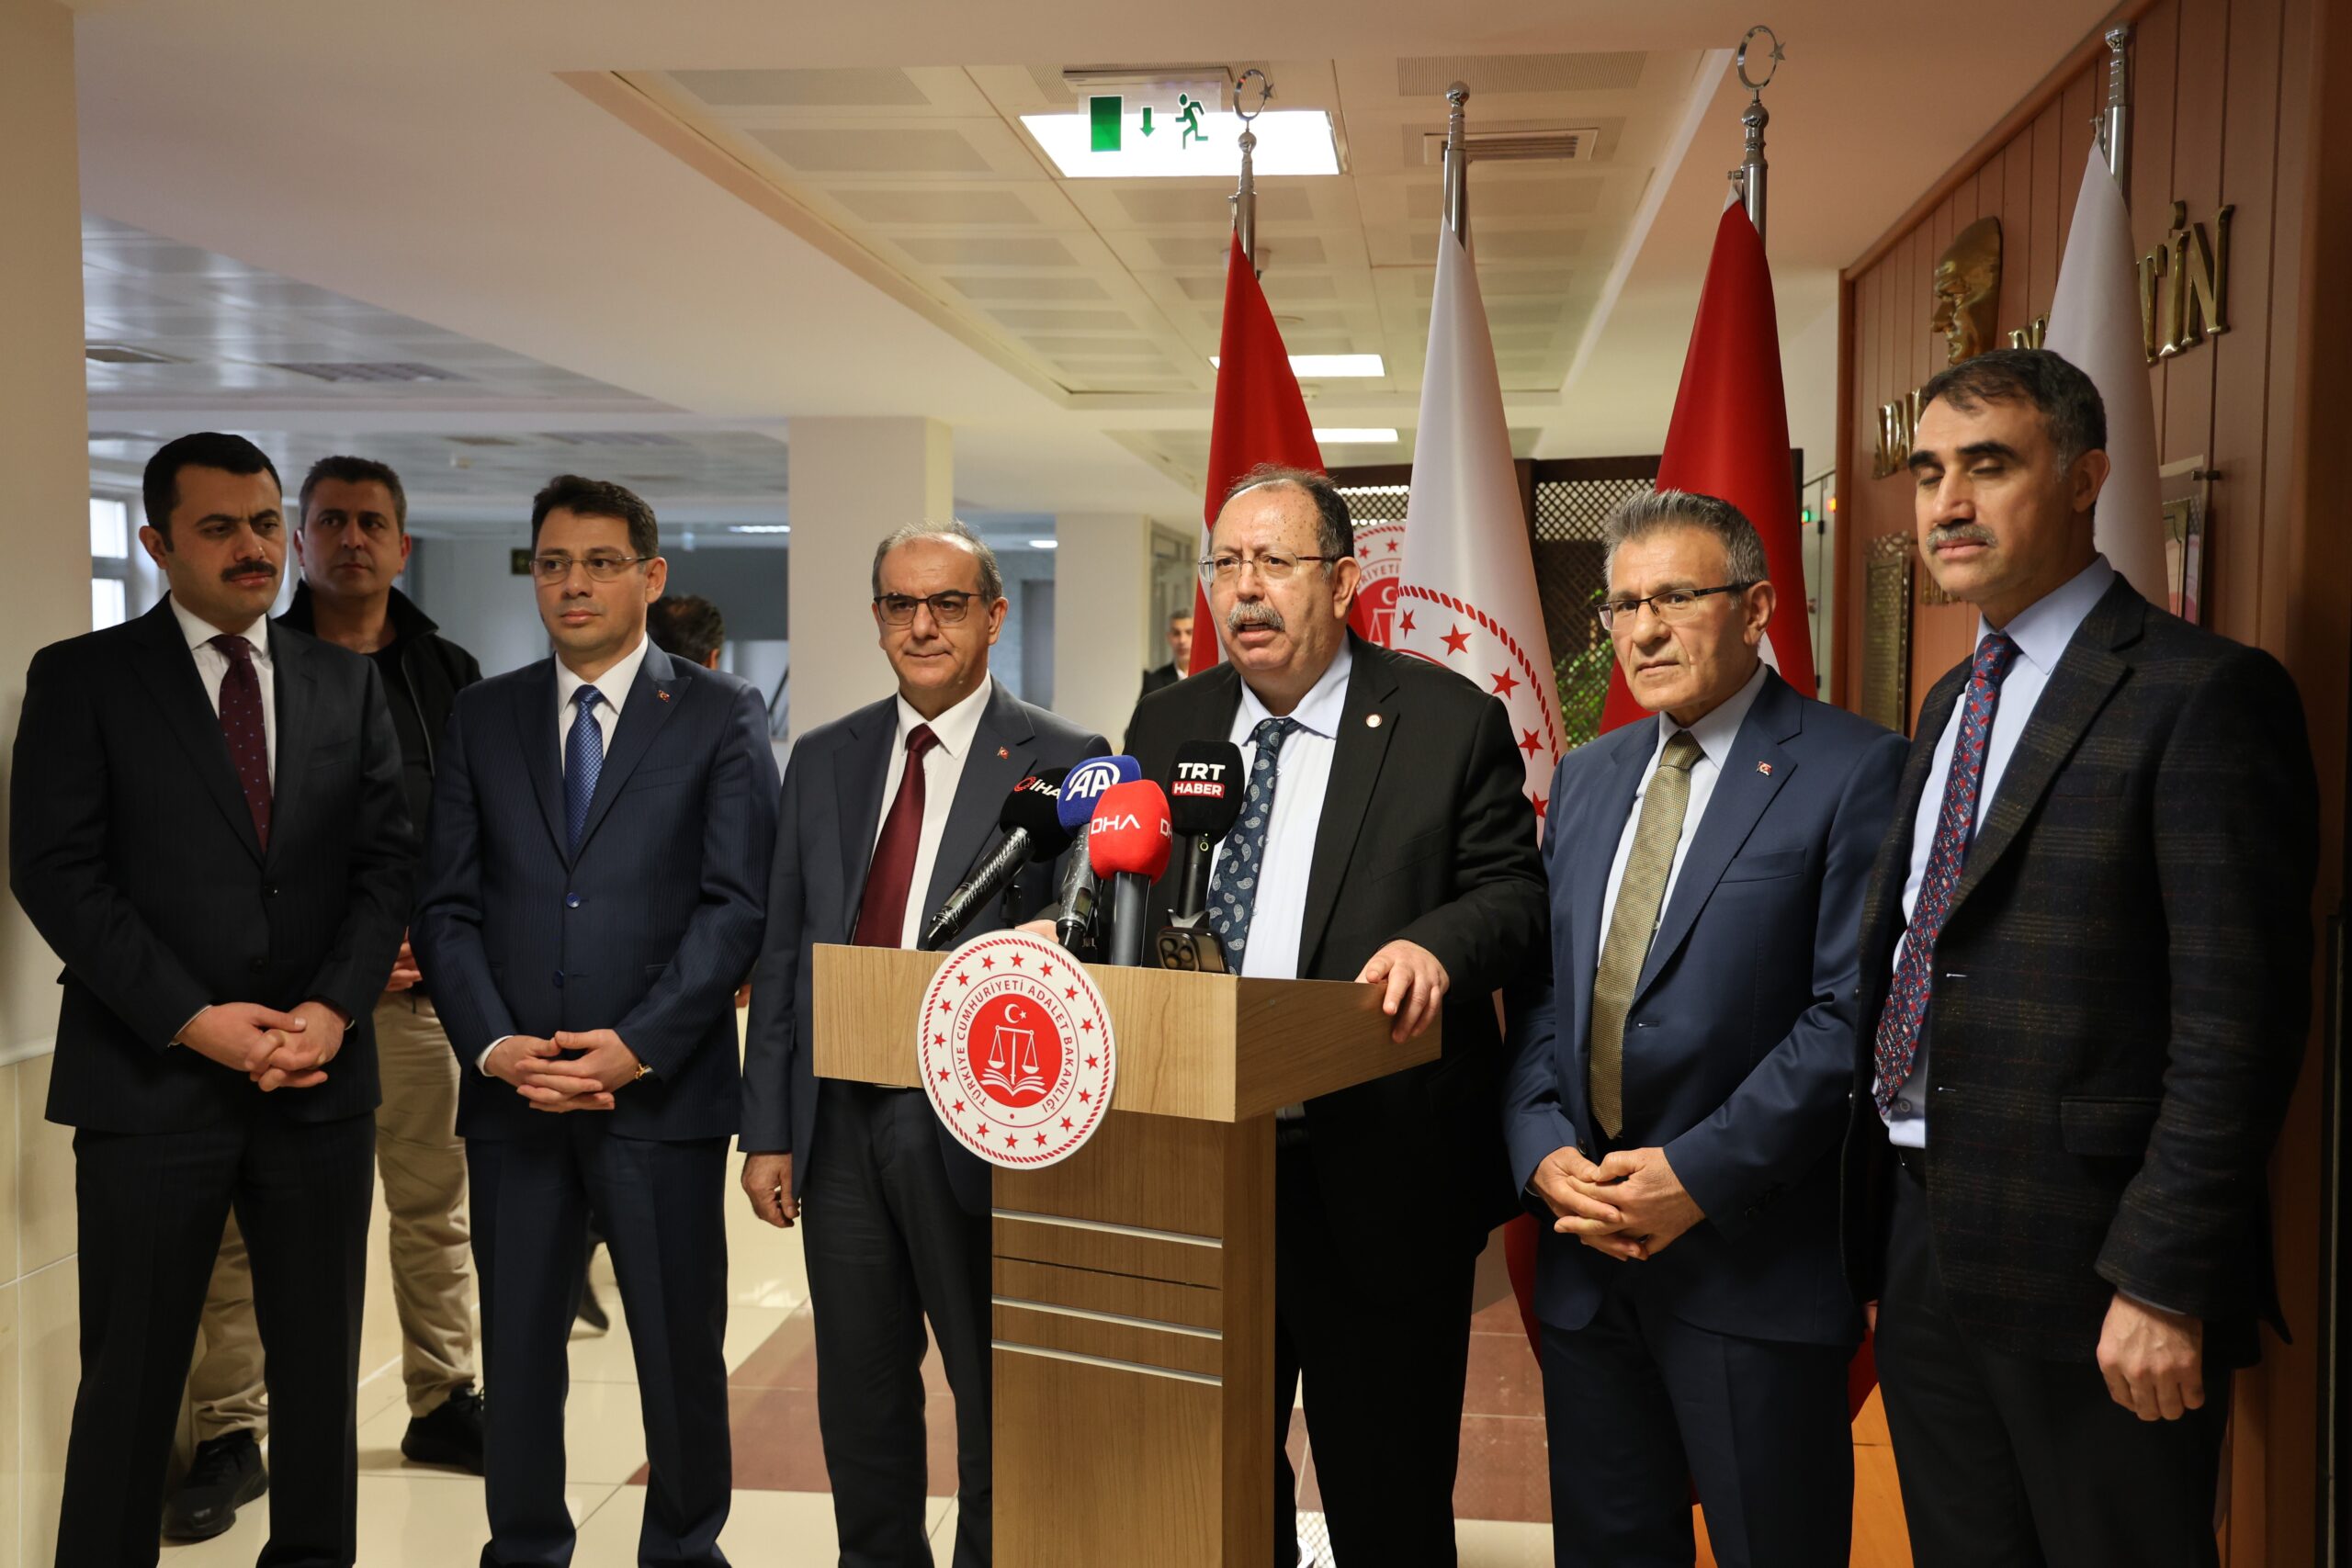 YSK Başkanı Diyarbakır'da konuştu: "Okullar ve konteyner alanları seçime hazır halde"